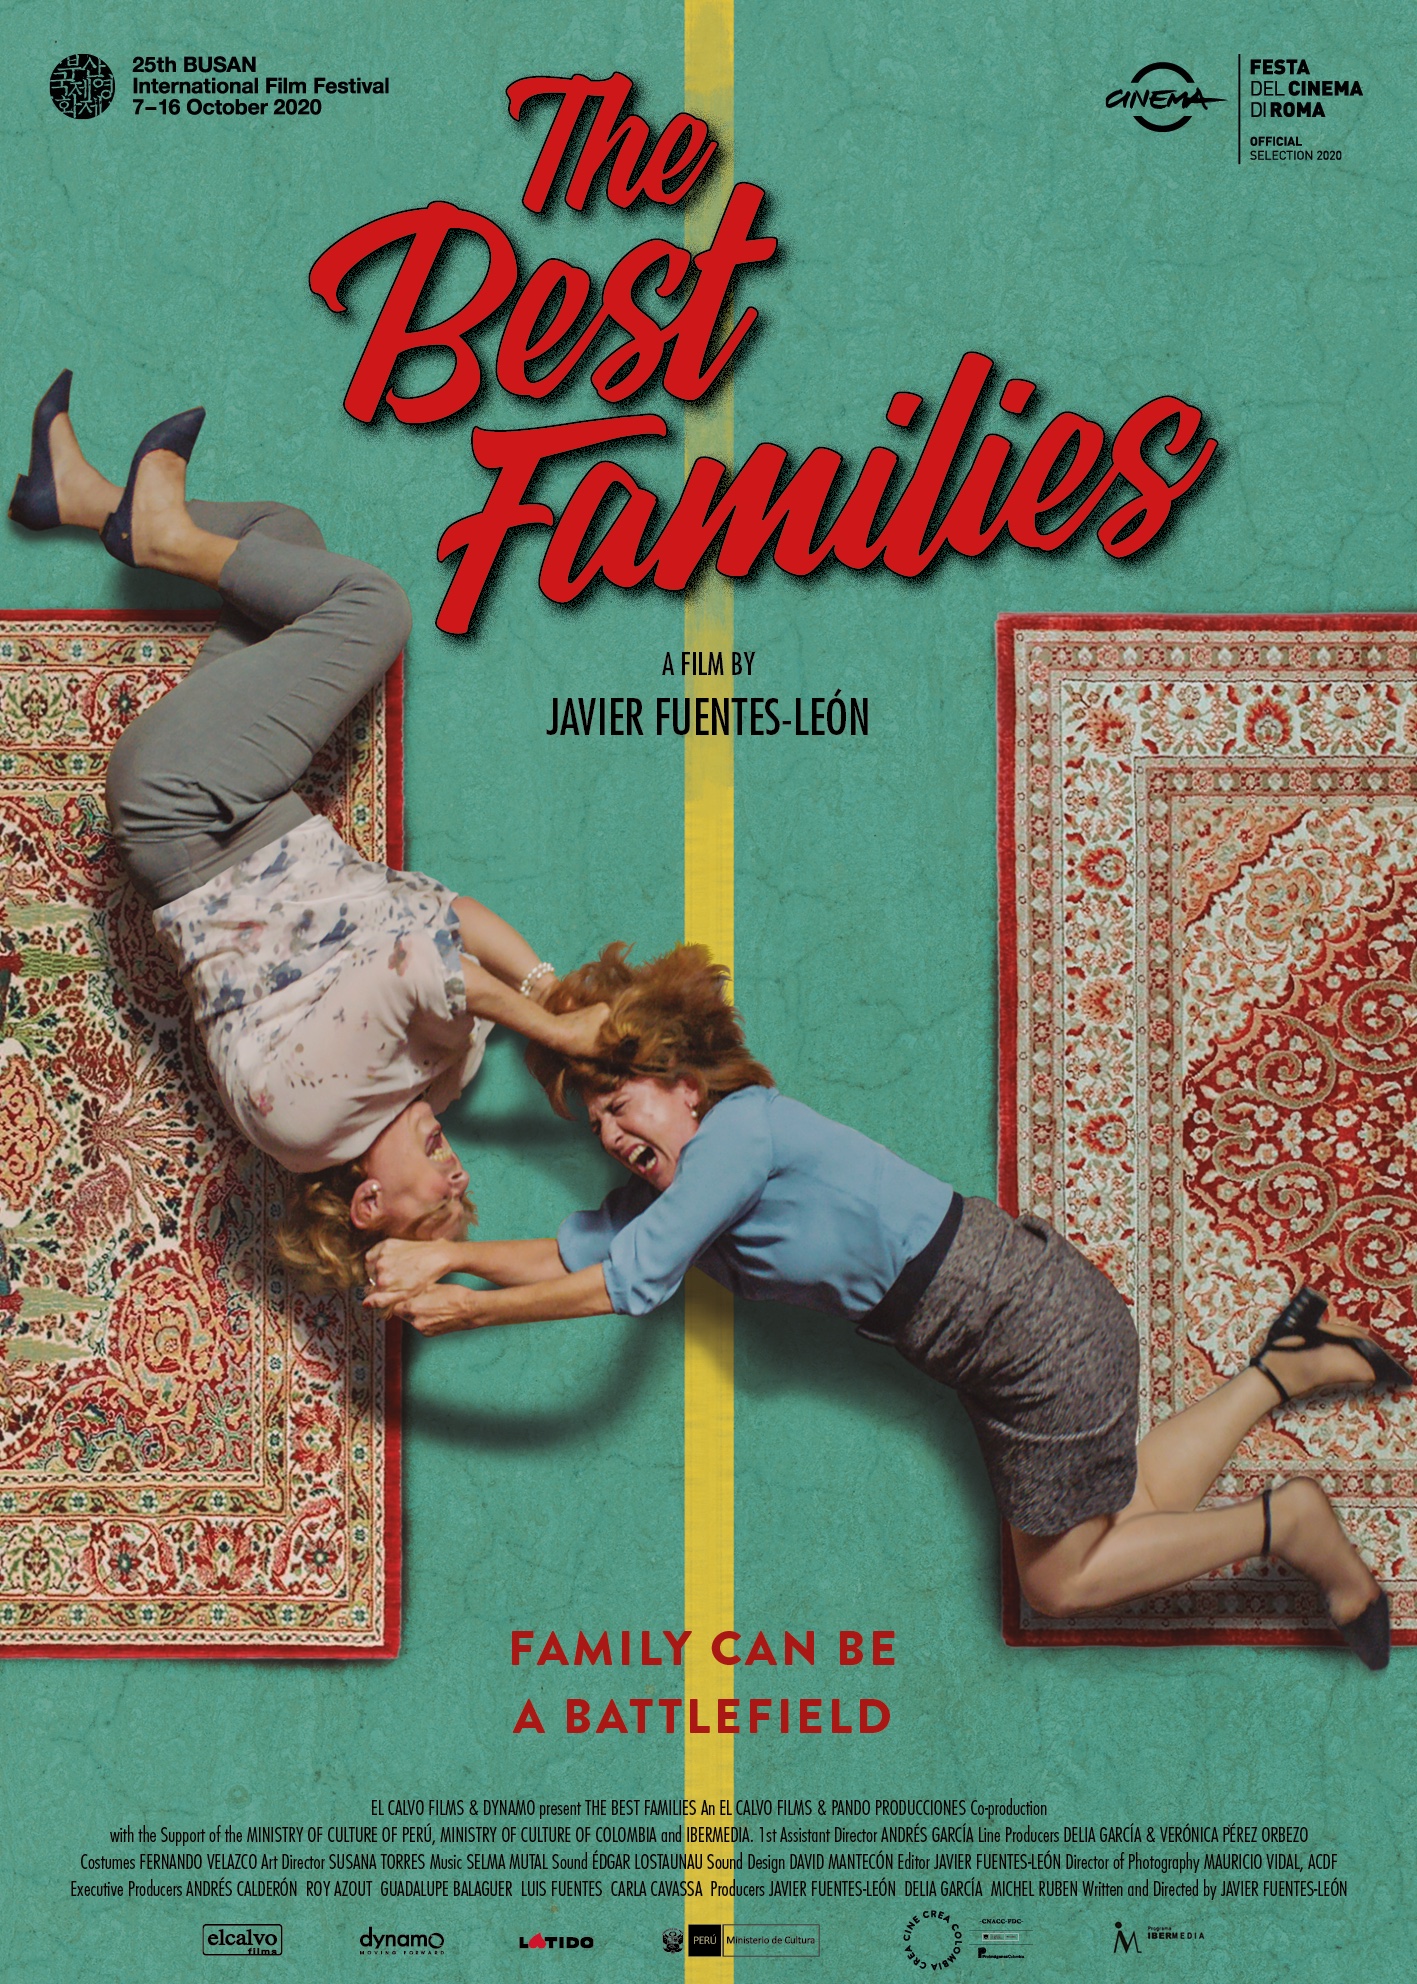 Las mejores familias (2020) постер